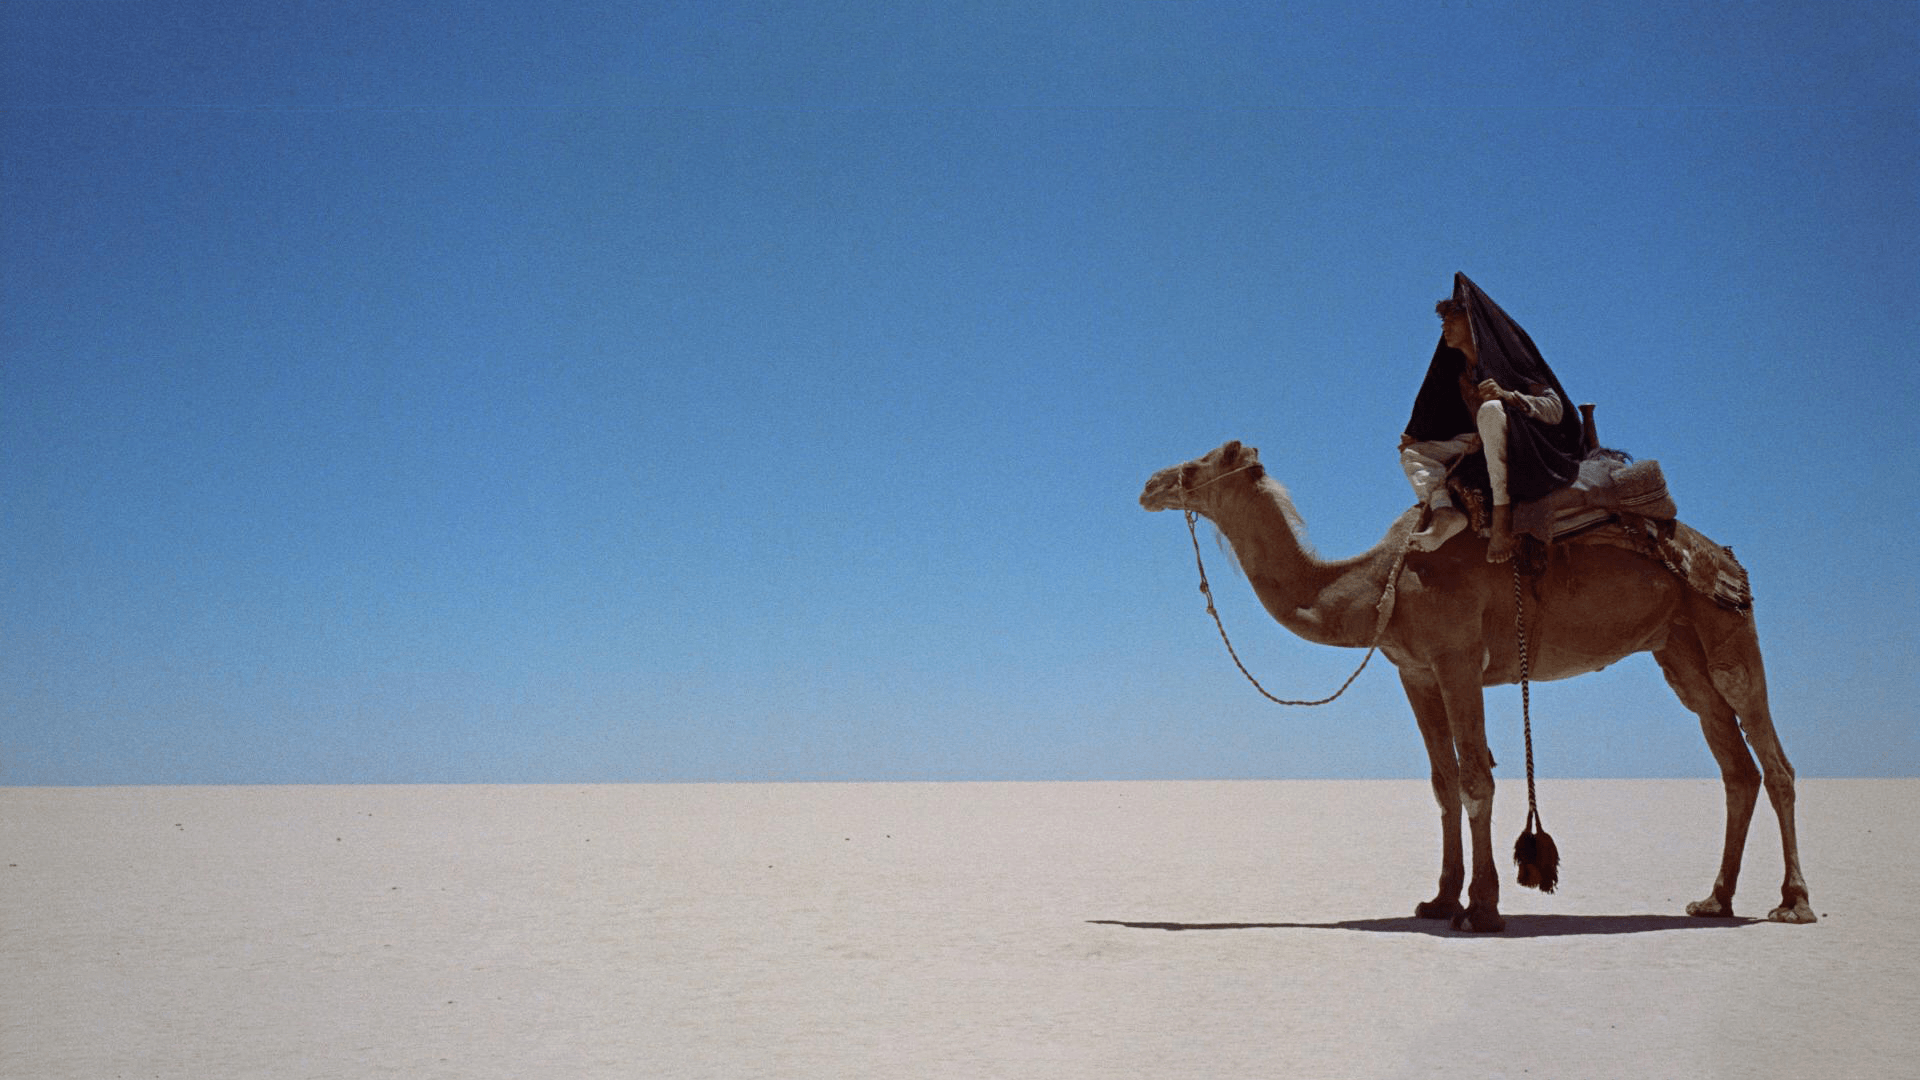 Arabian Desert Pictures Wallpapers